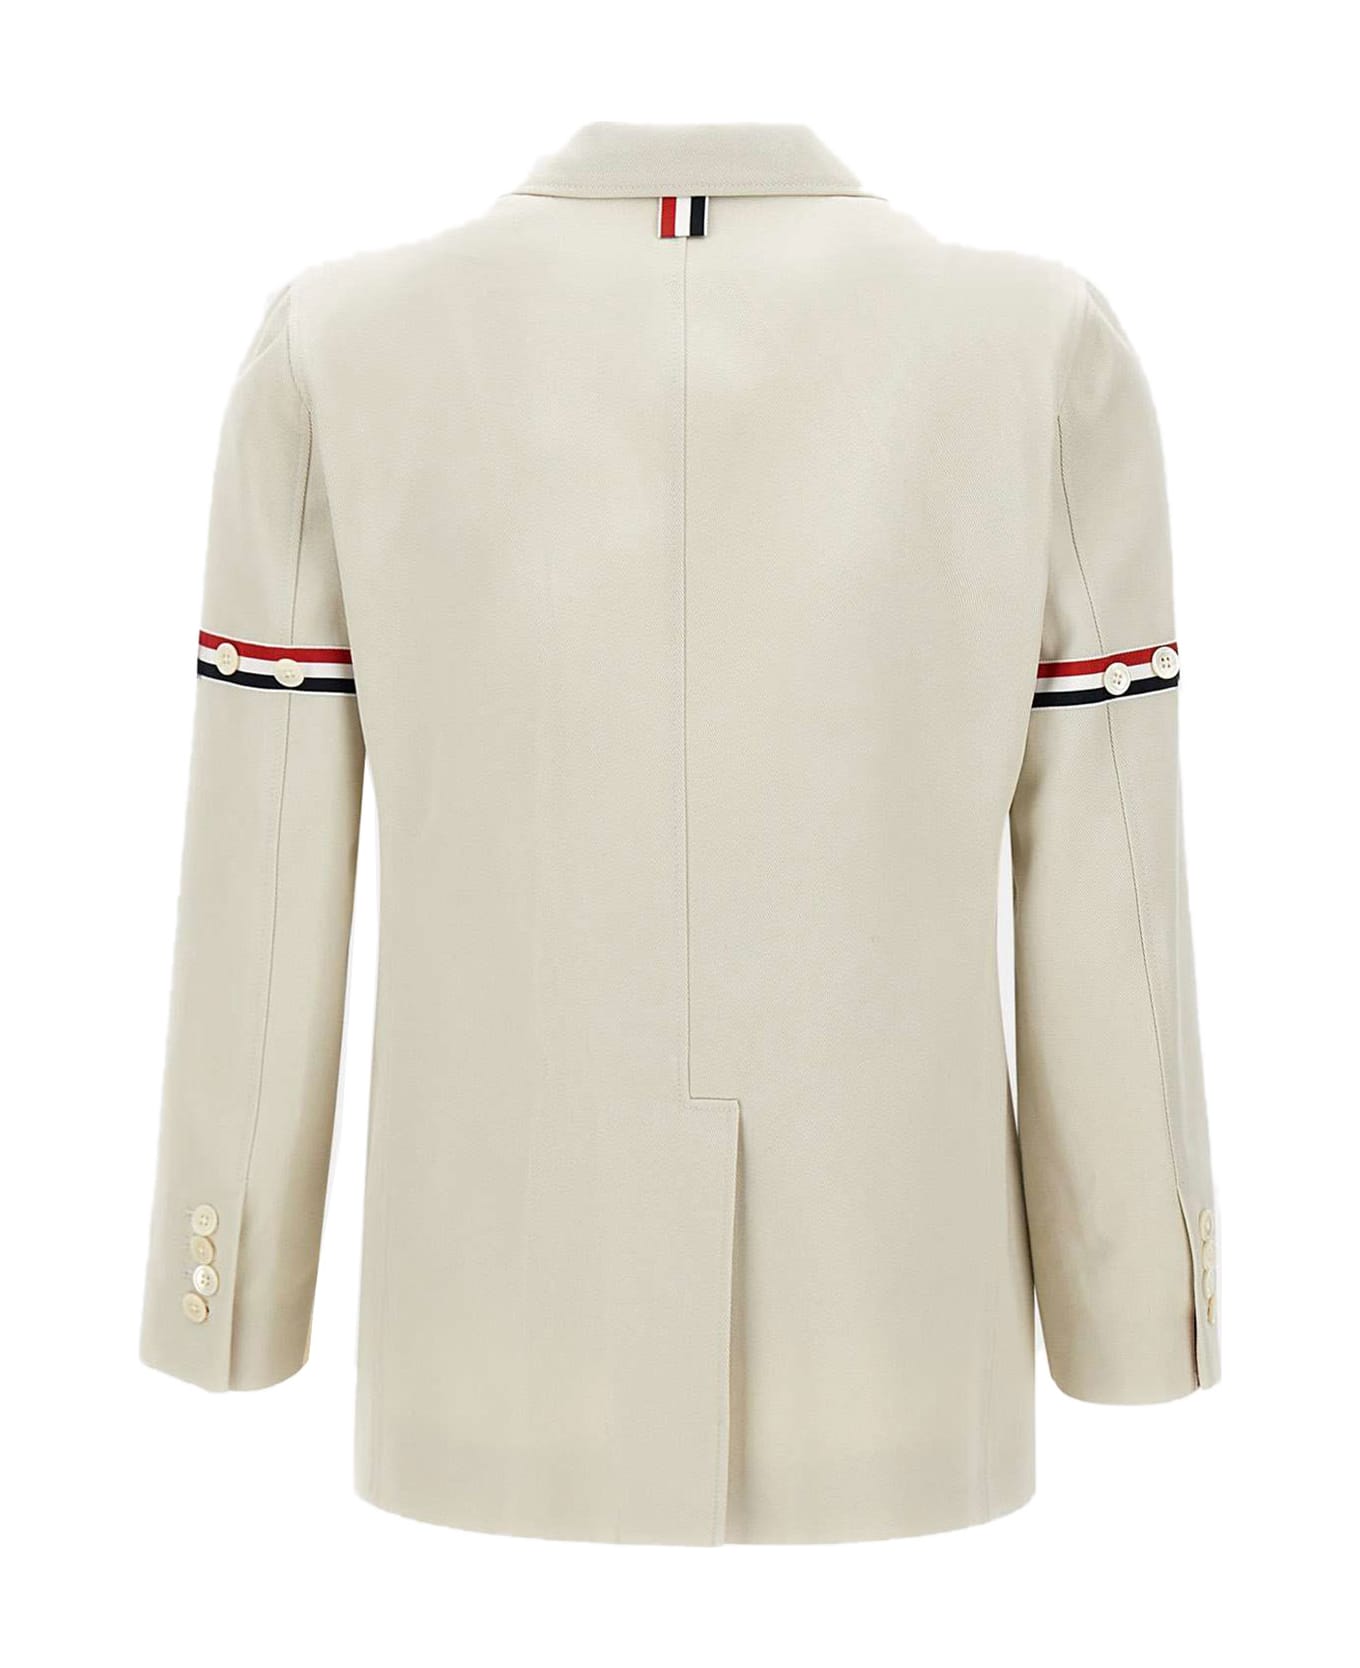 Thom Browne White Cotton Jacket - BEIGE